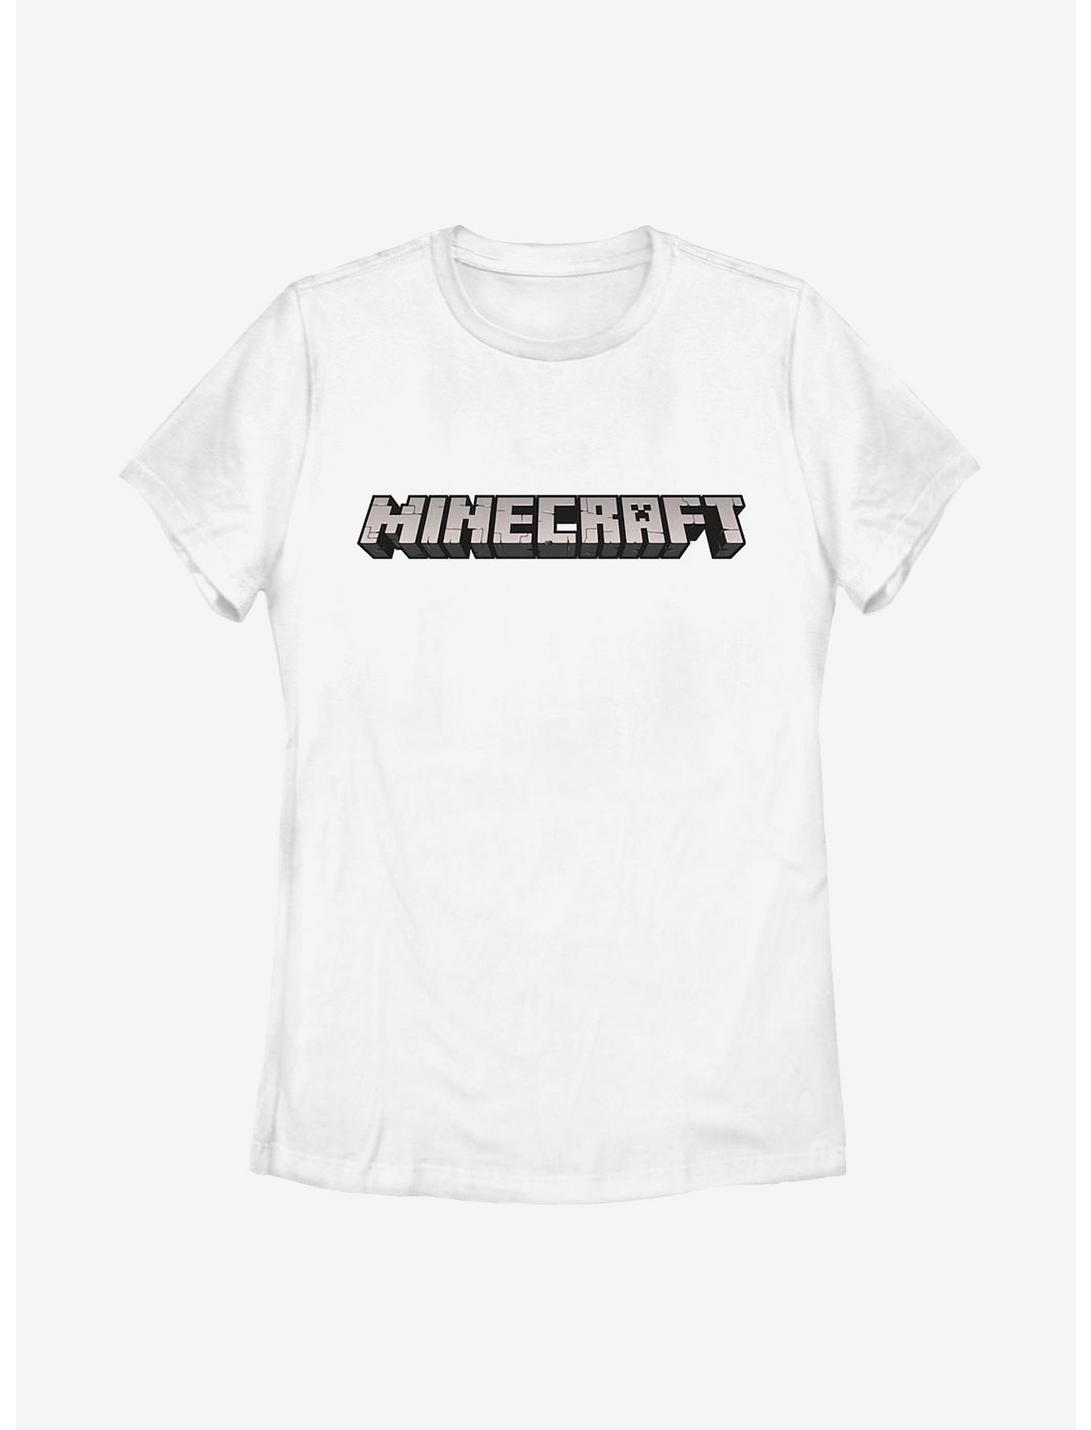 Minecraft Logo White Womens T-Shirt, WHITE, hi-res